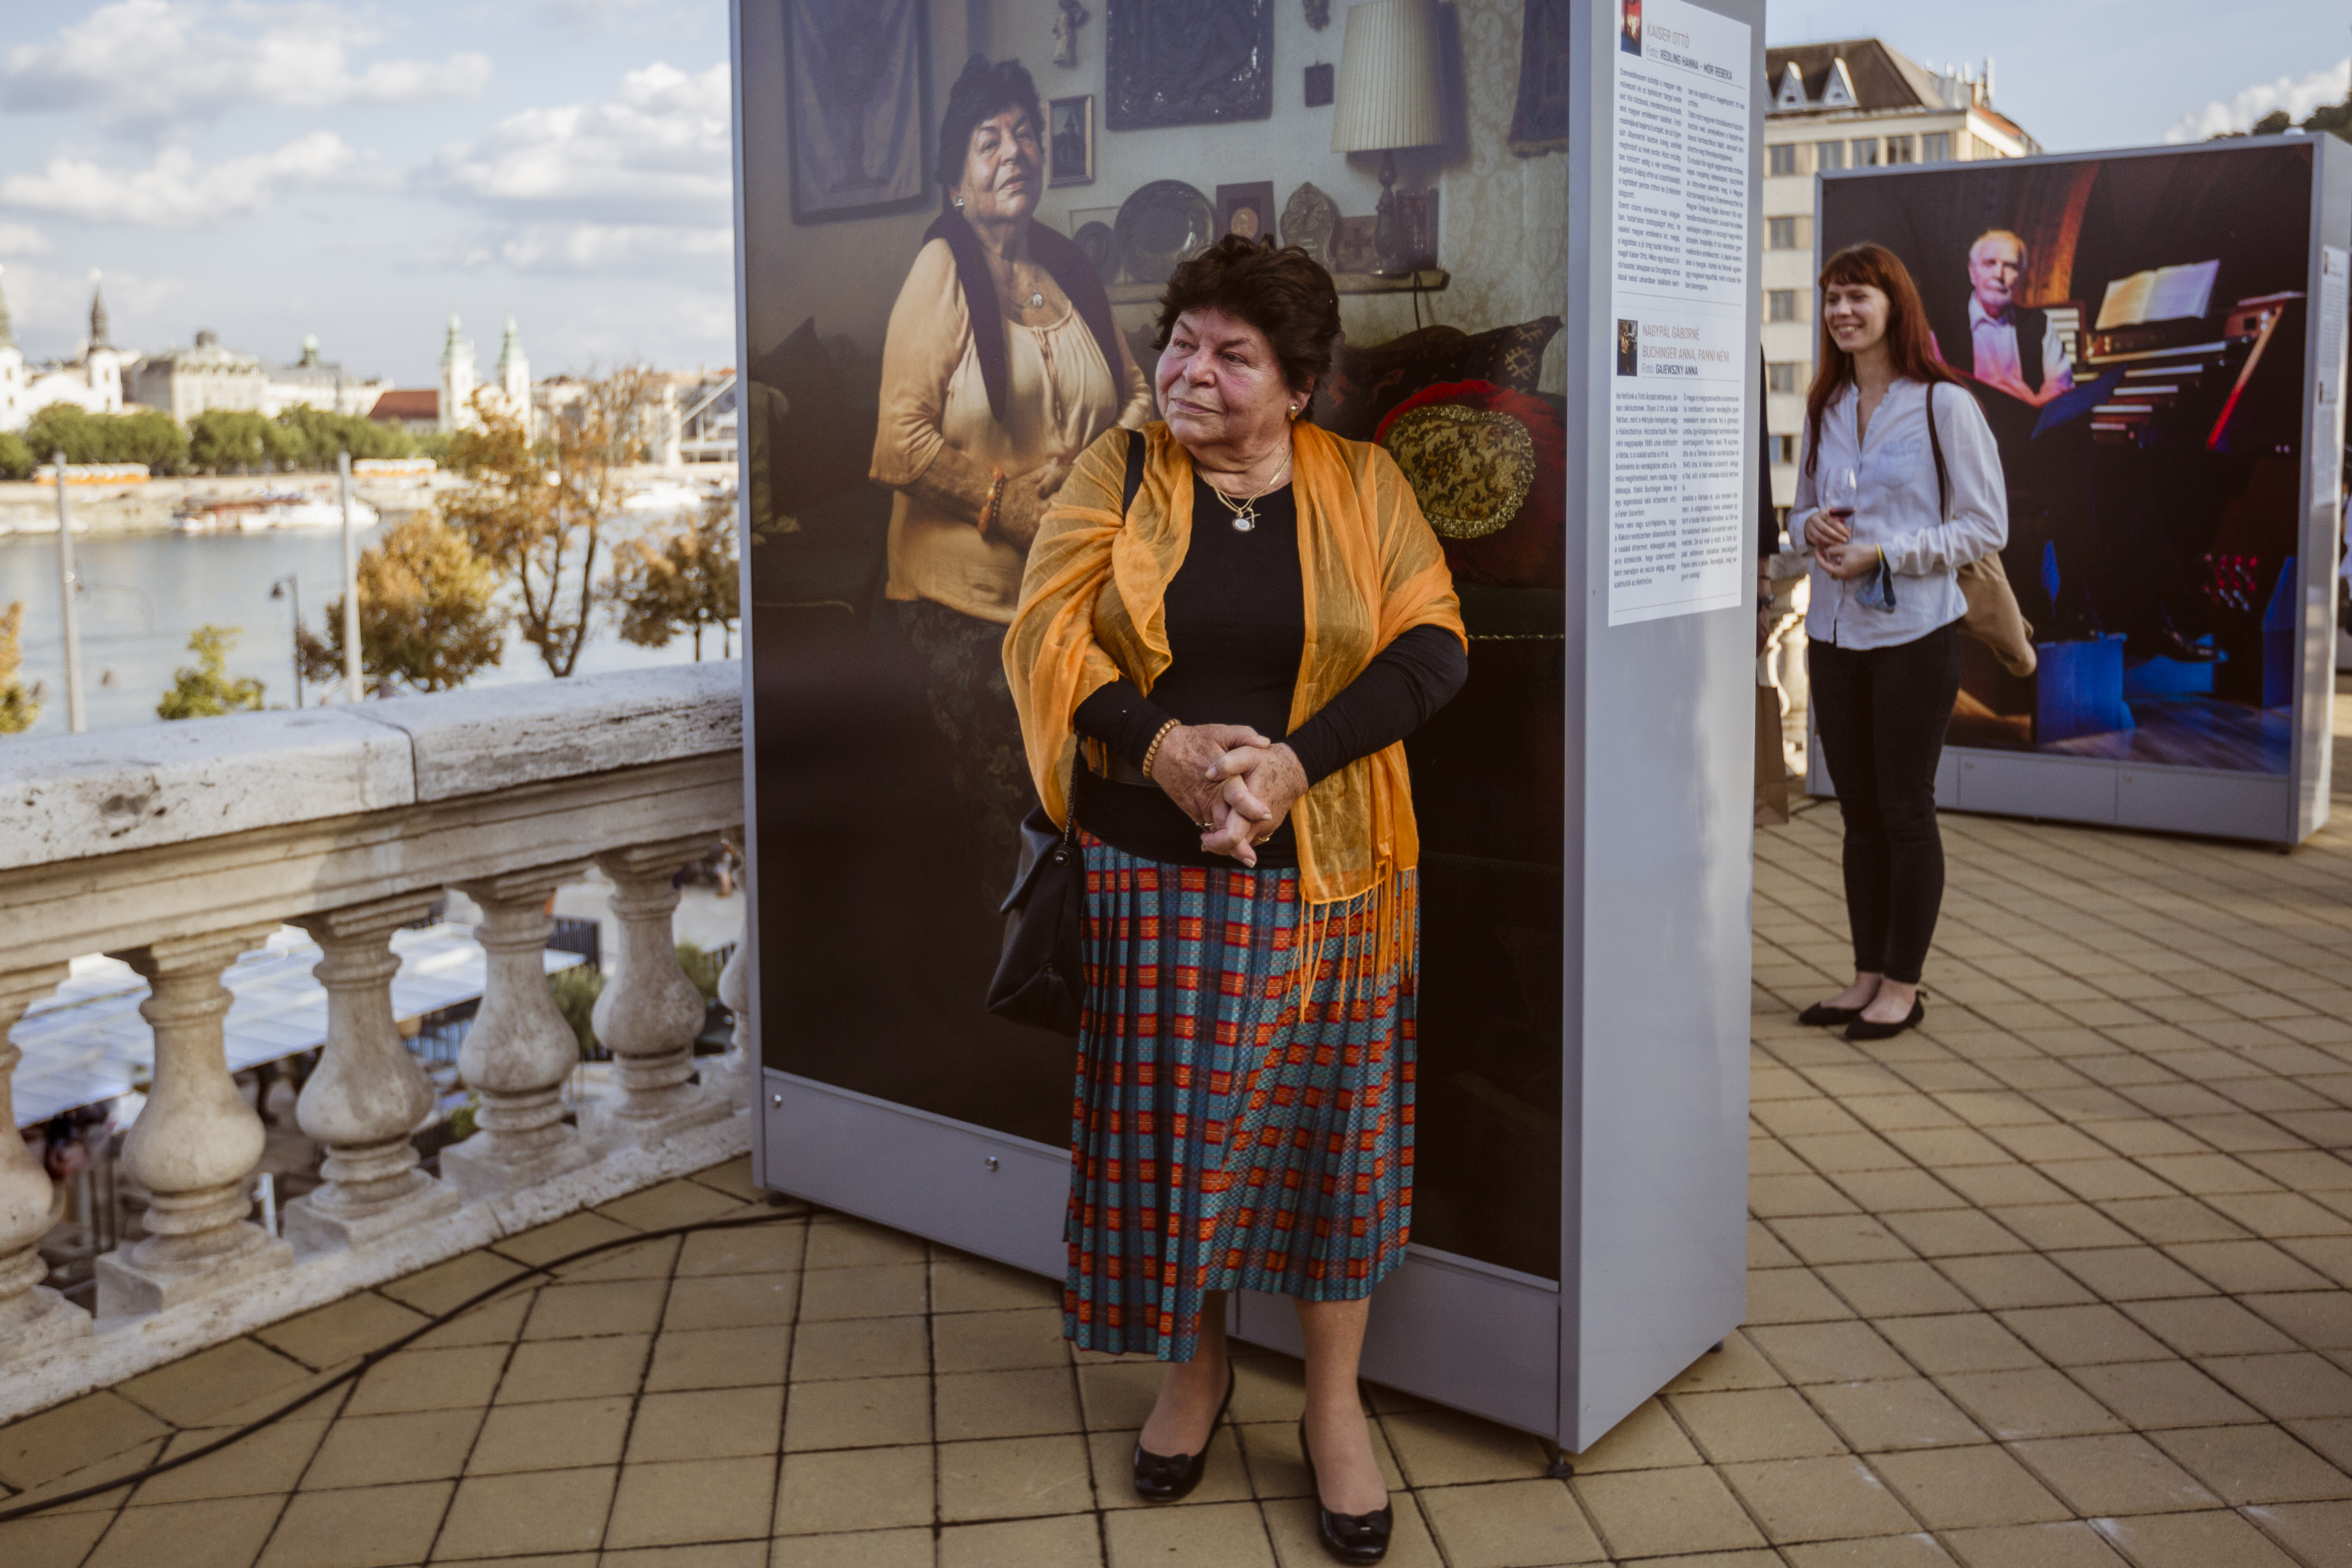 Kiállítás szabadtéren – élettörténeteken át elevenedik meg a Várnegyed a Budavári Legendák tárlatán